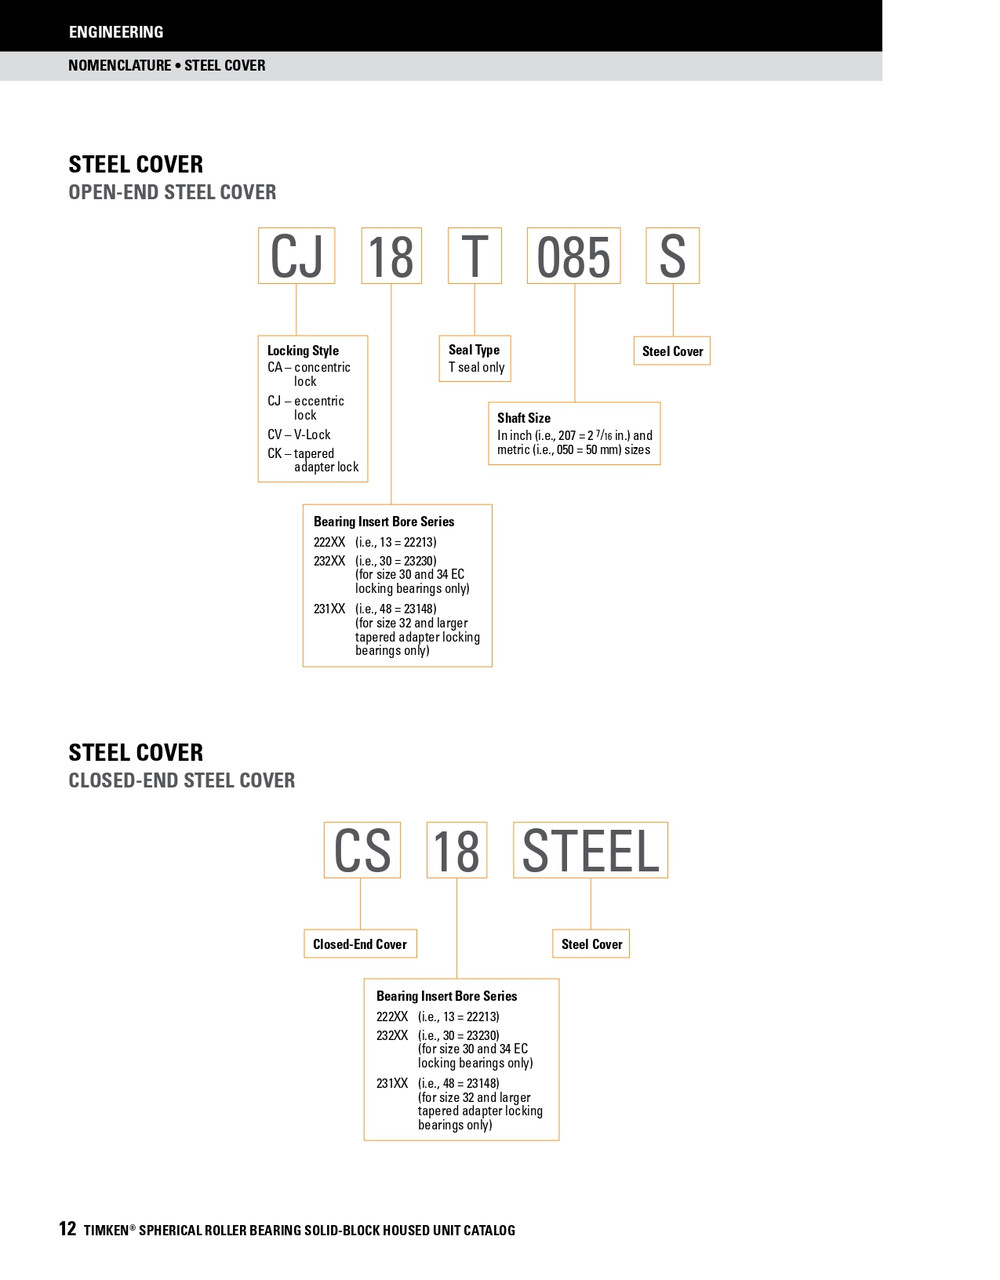 4-15/16" Timken SRB Steel Open End Cover w/Teflon Seal - TA/DV Taper Lock Bushing Type  CK28T415S